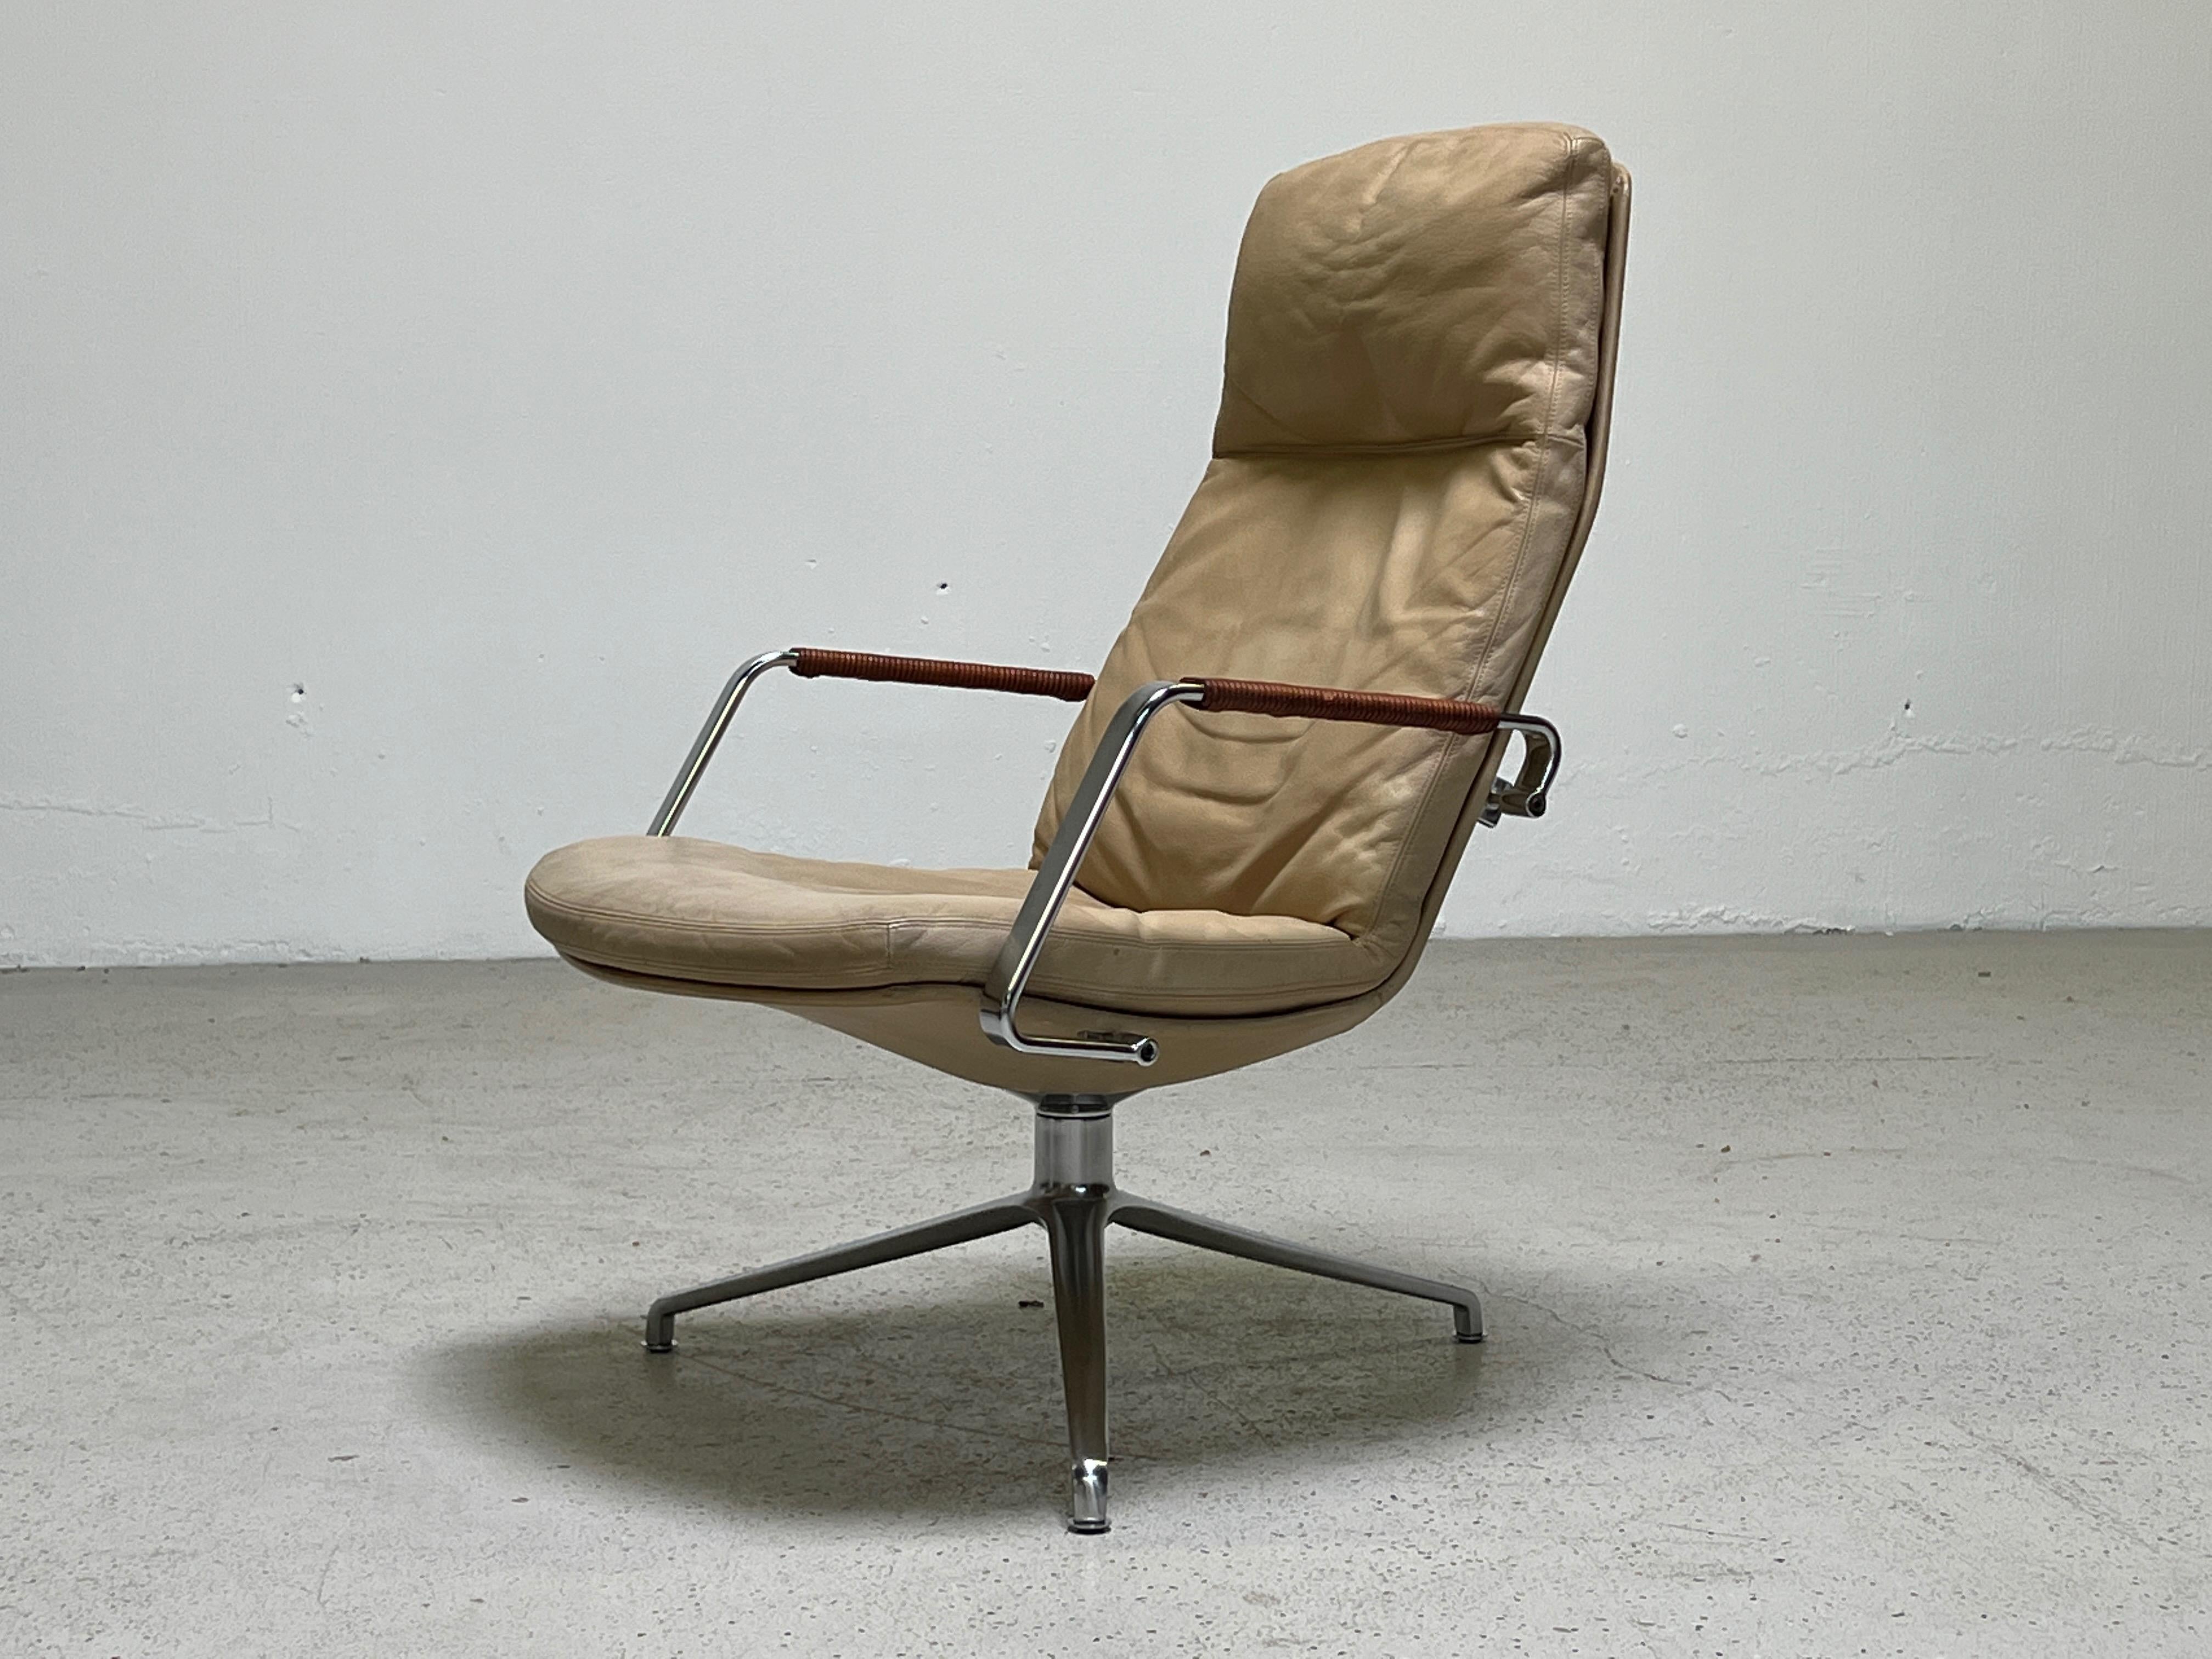 Der drehbare Sessel FK 86 wurde von Preben Fabricius & Jørgen Kastholm entworfen. Original elfenbeinfarbenes Leder mit lederumwickelten Armlehnen.